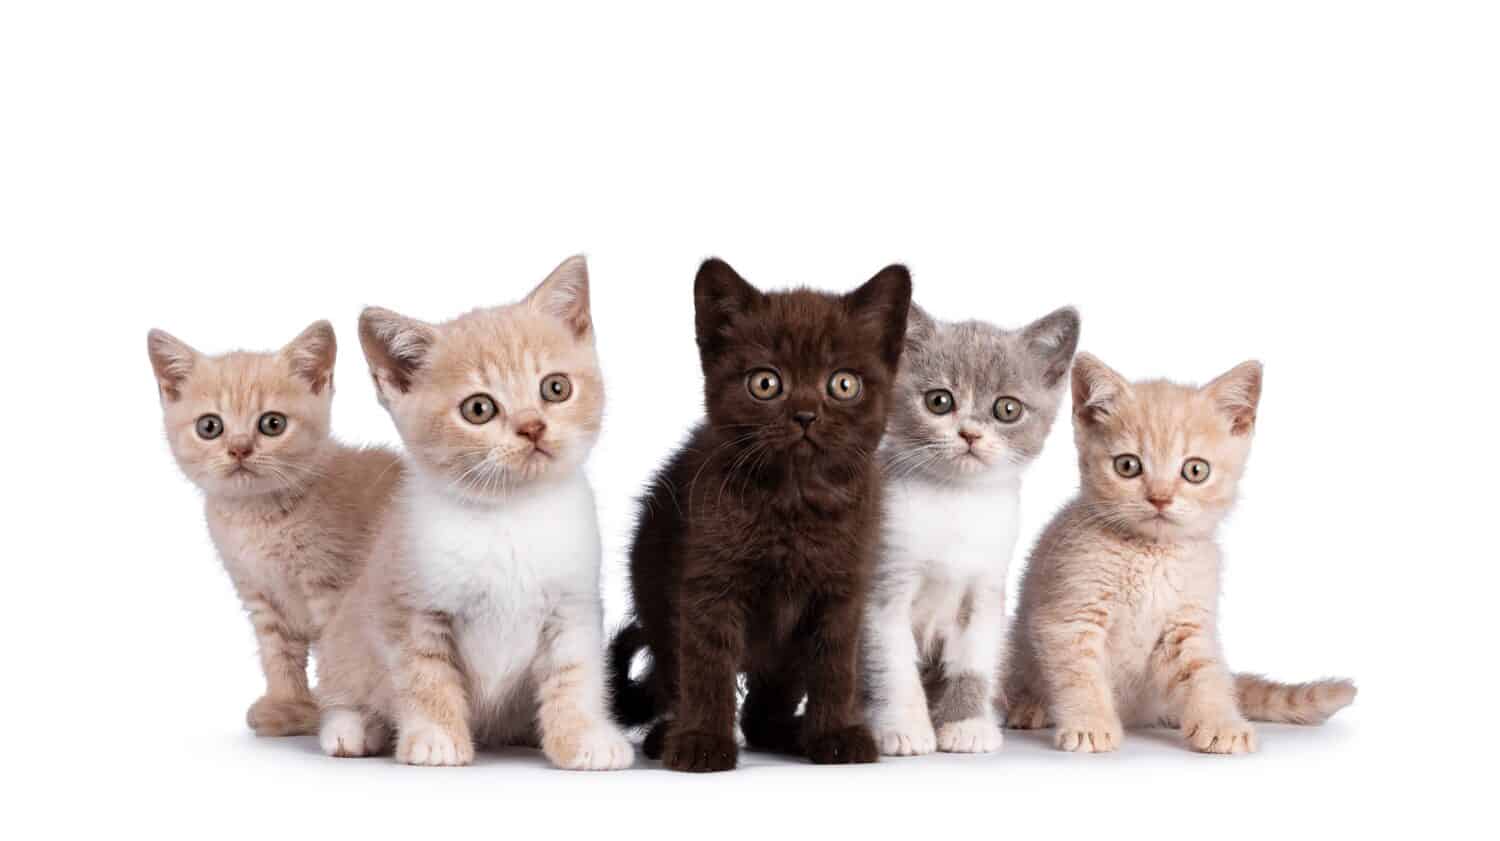 Fila di 5 gattini di gatto British Shorthair di vari colori, in piedi e seduti insieme.  Tutti di fronte alla fotocamera.  Isolato su sfondo bianco.